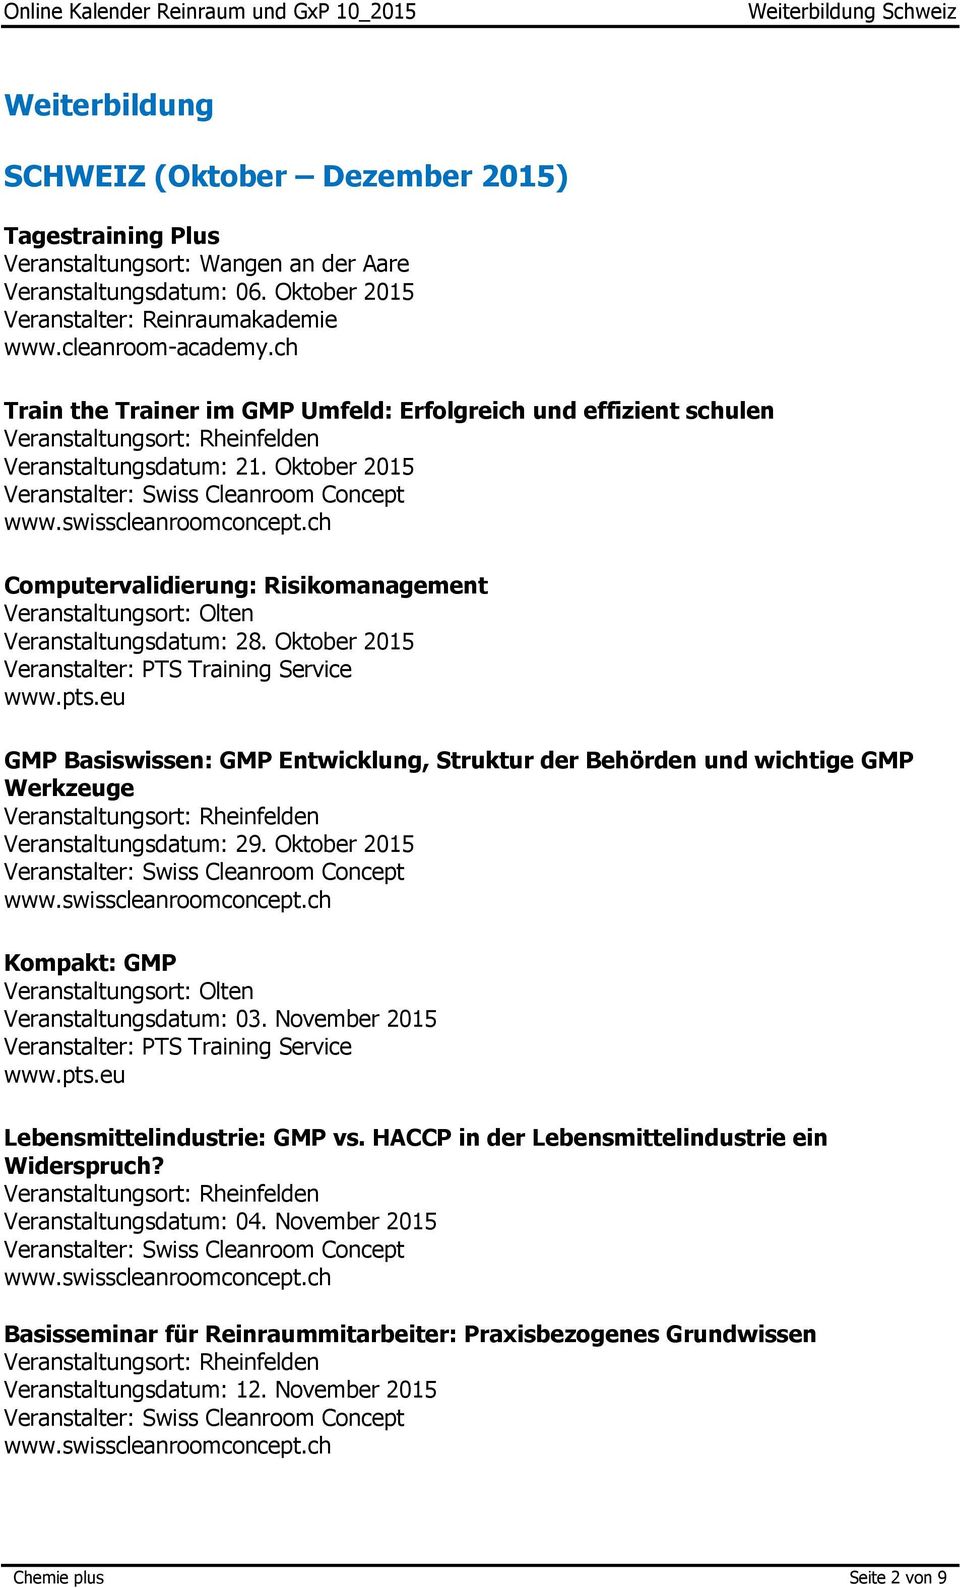 Oktober 2015 GMP Basiswissen: GMP Entwicklung, Struktur der Behörden und wichtige GMP Werkzeuge Veranstaltungsdatum: 29. Oktober 2015 Kompakt: GMP Veranstaltungsdatum: 03.